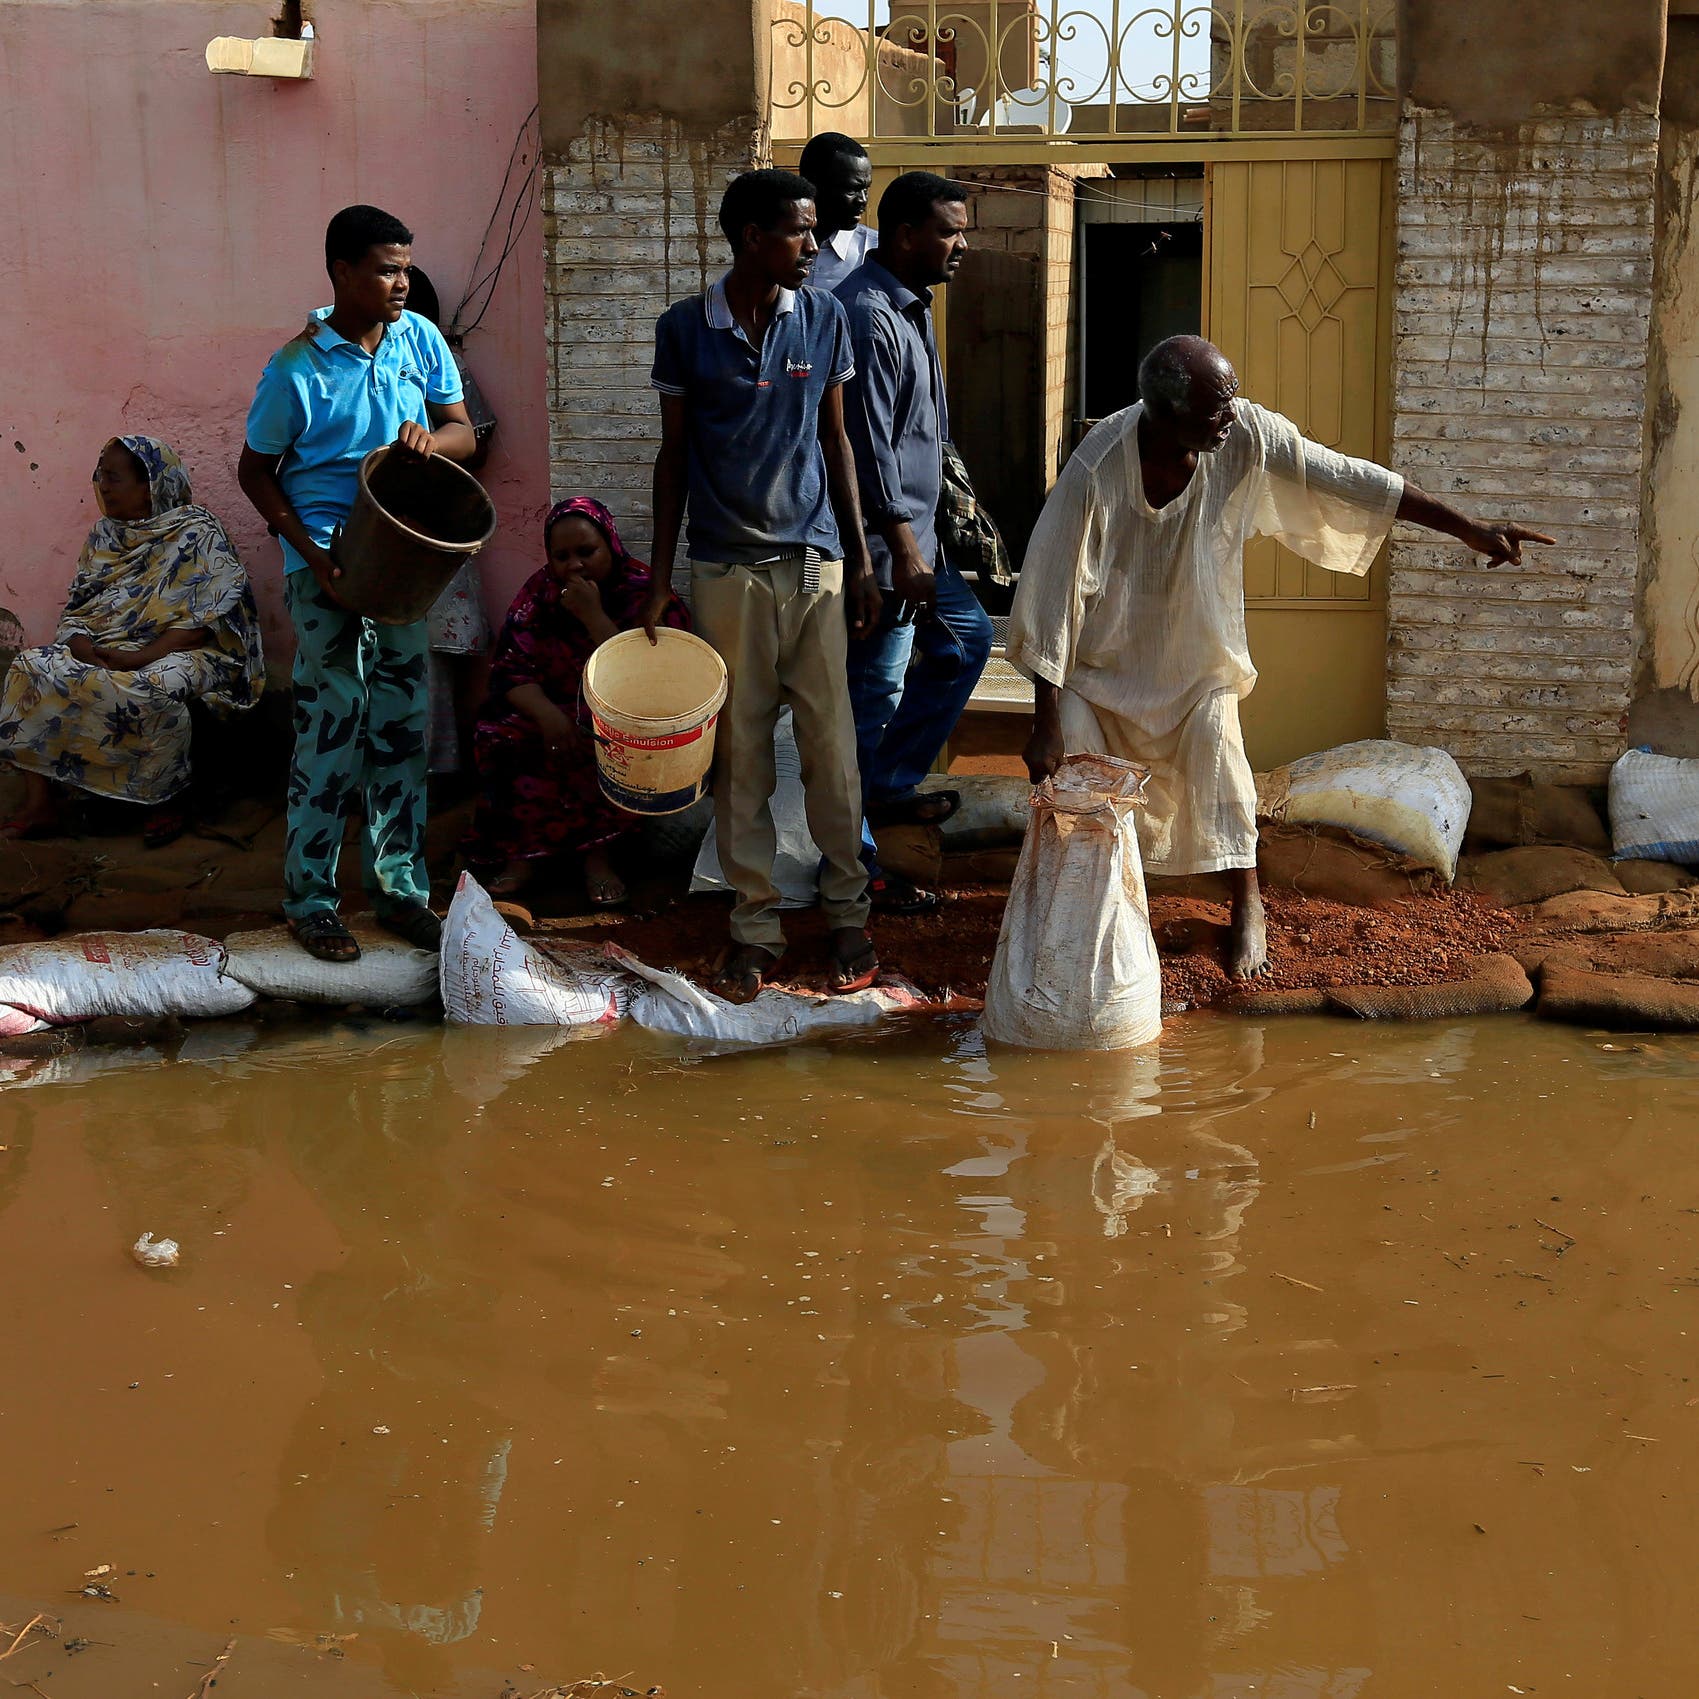 "المهنيين السودانيين": الفيضانات تتطلب إعلان طوارئ